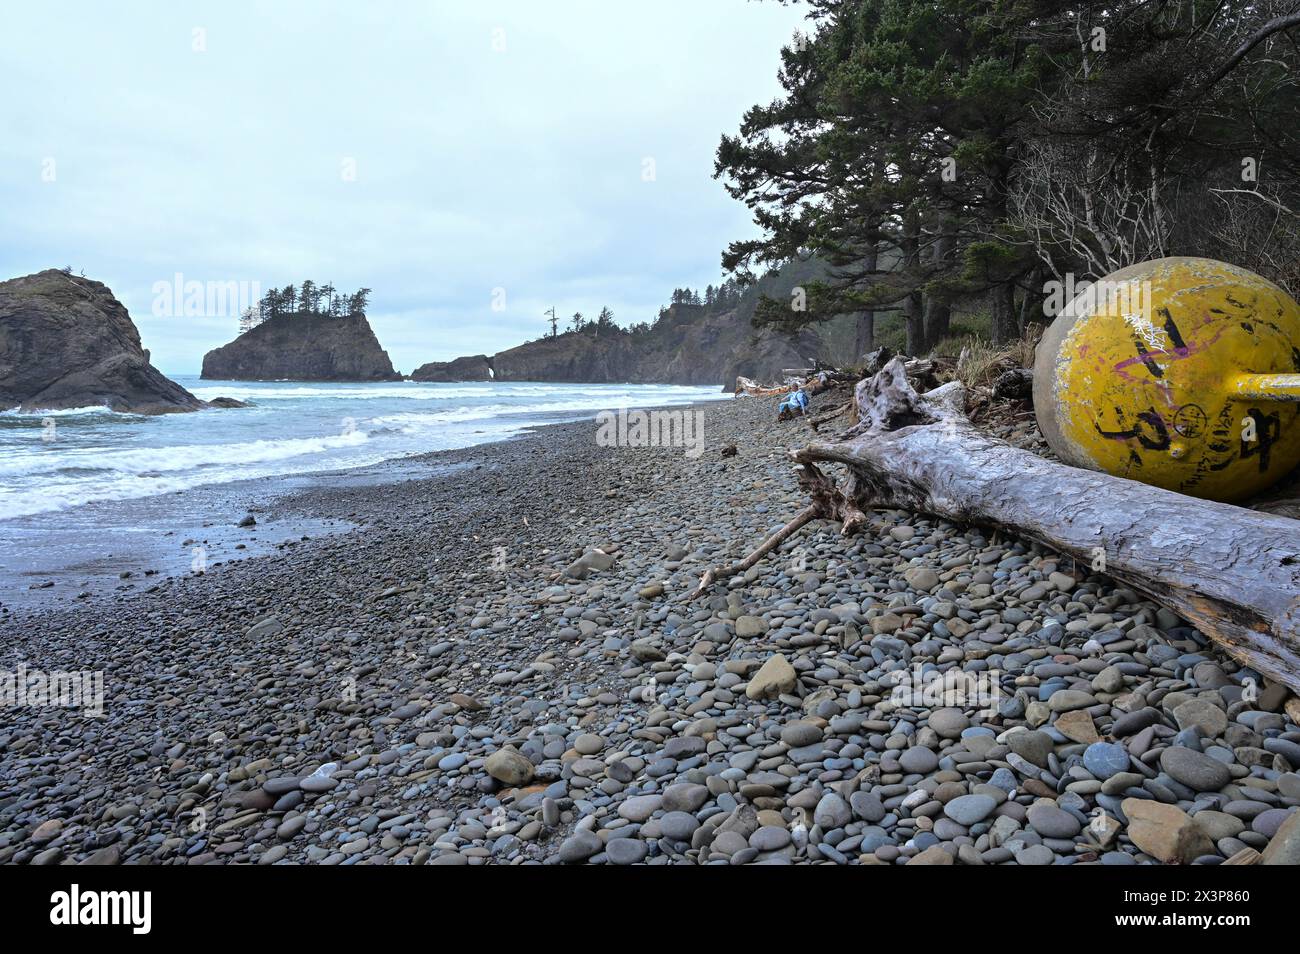 Le grandi navi galleggiano su una costa rocciosa. Paesaggio costiero di Washington. Persona seduta su un tronco più in basso sulla spiaggia. Foto Stock